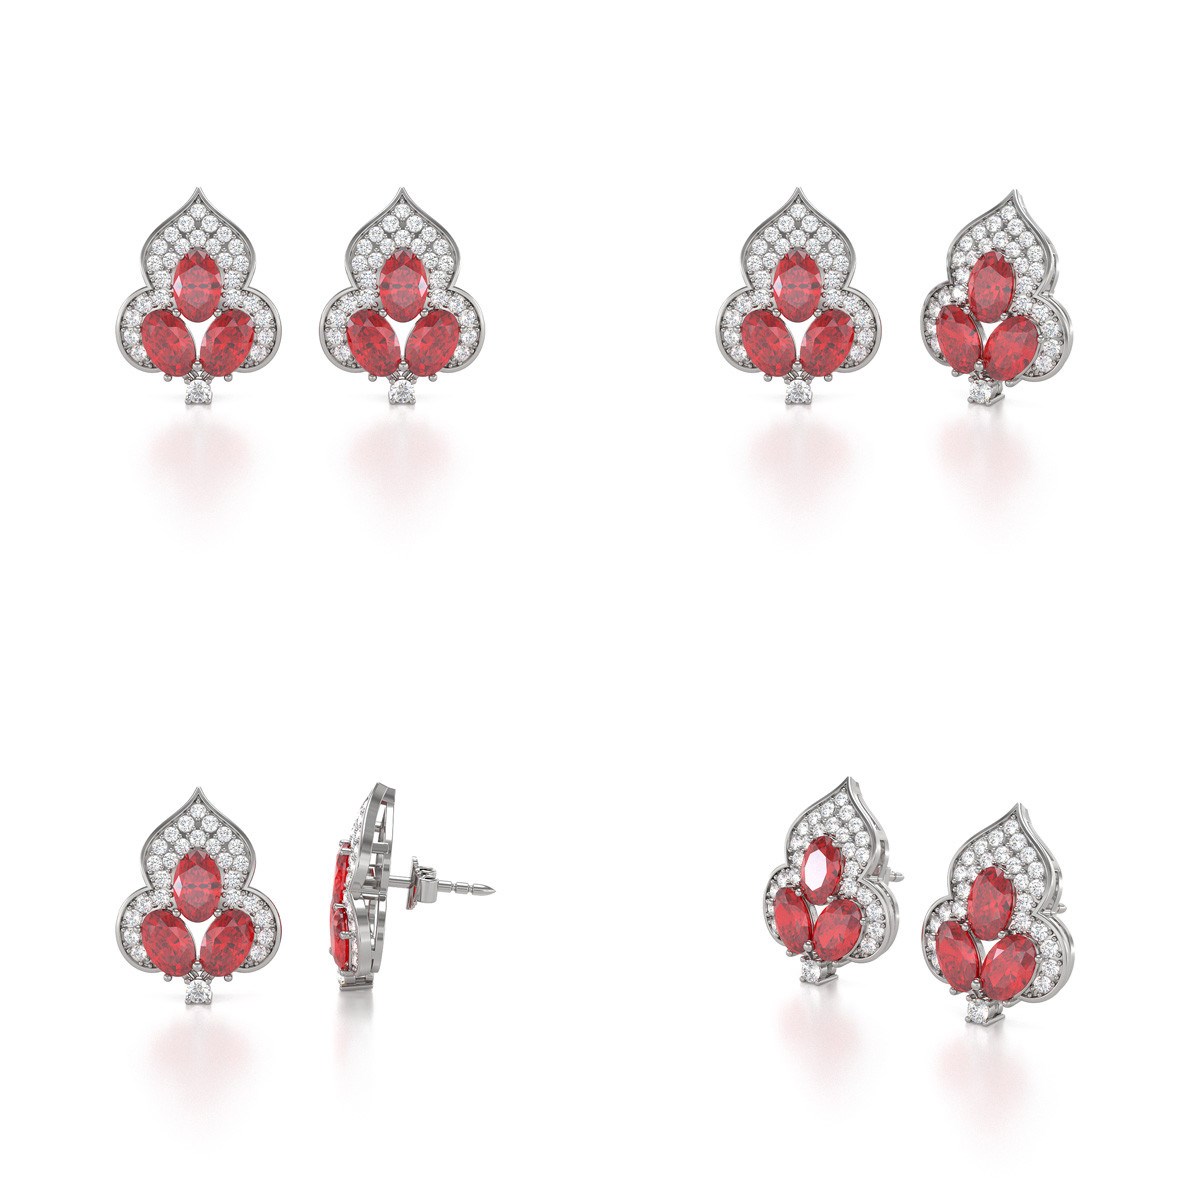 Boucles d'oreilles ADEN Rubis et Diamants sur Argent 925 3.5grs - vue 2